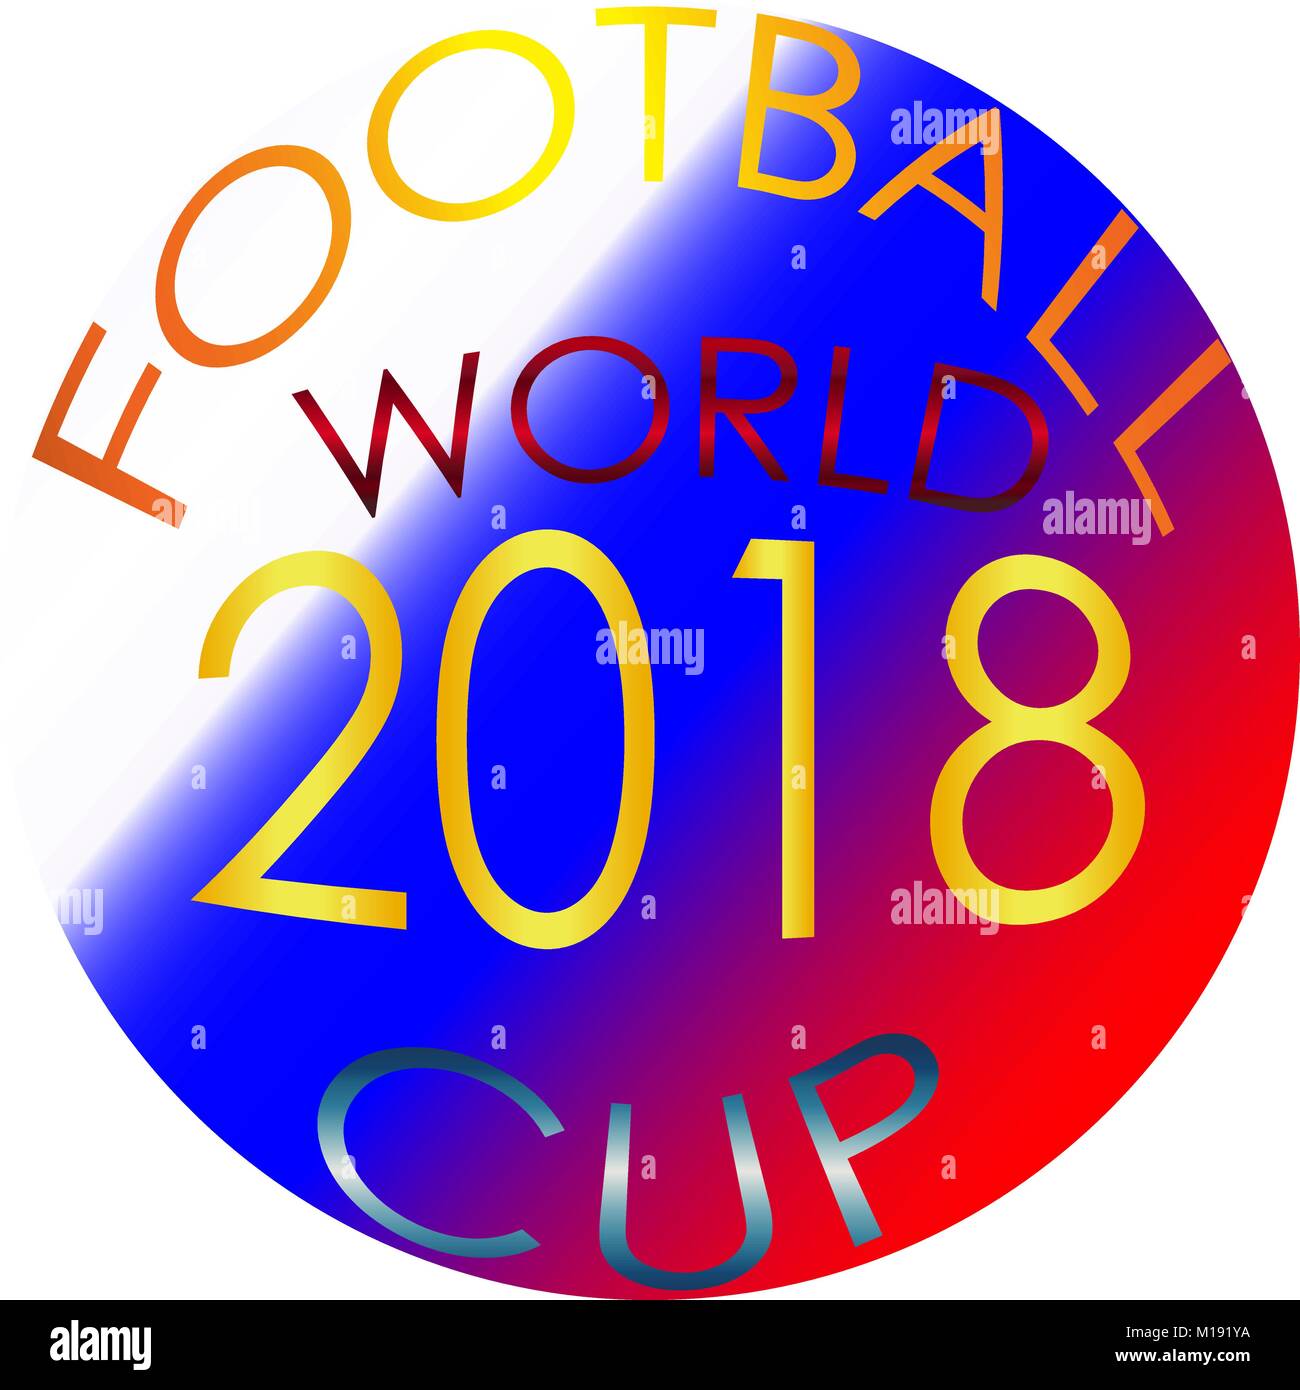 Mondiali di calcio in Russia 2018 logo, emblema di arte Immagine e  Vettoriale - Alamy